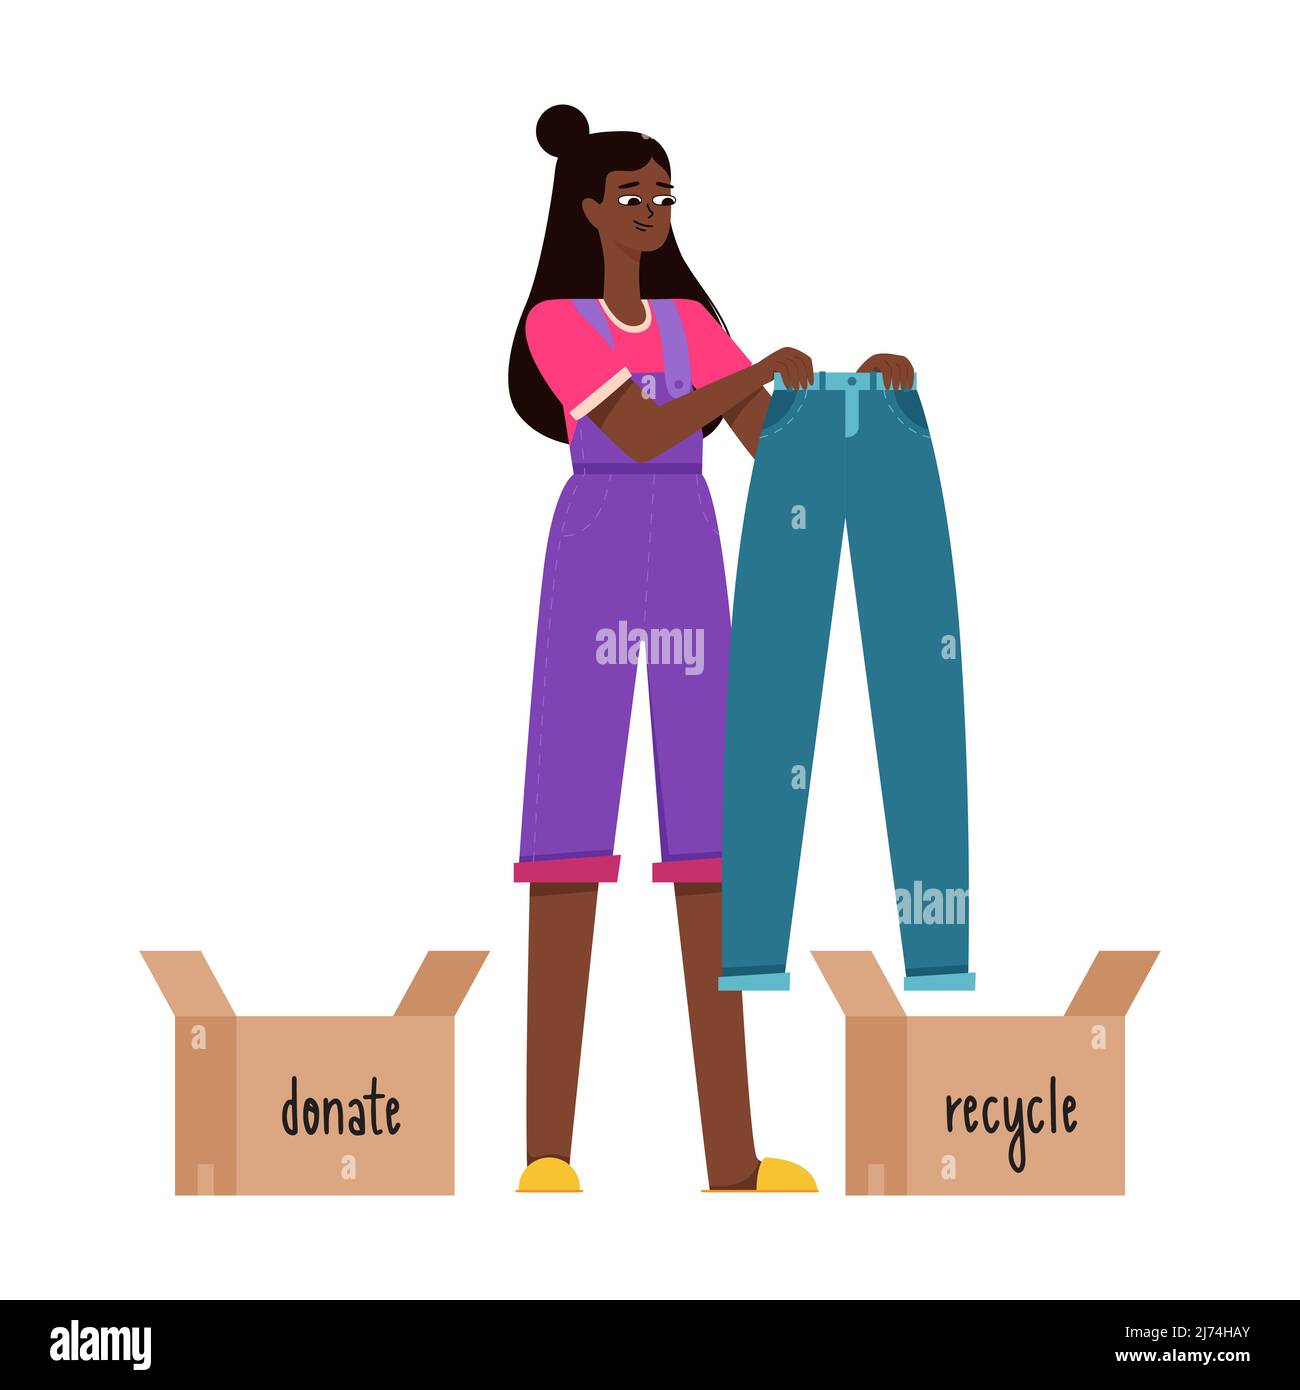 Una giovane ragazza nera sta tenendo i jeans blu nelle sue mani e sta pensando di donarli o riciclarli. Consumo ragionevole, stipando, ordinando i vestiti Illustrazione Vettoriale